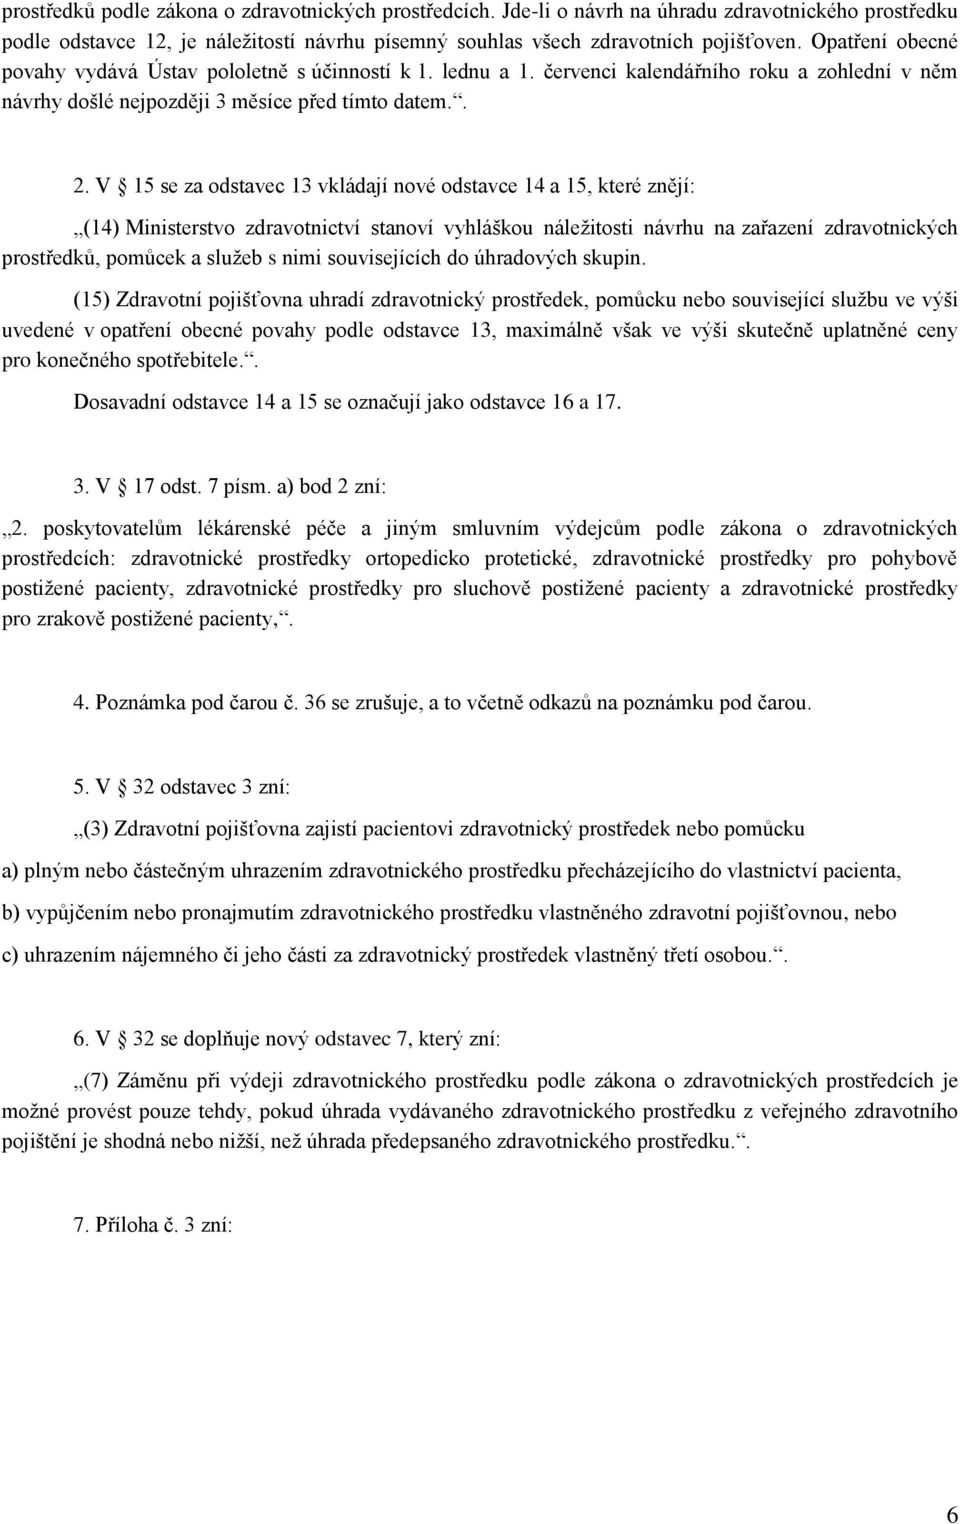 V 15 se za odstavec 13 vkládají nové odstavce 14 a 15, které znějí: (14) Ministerstvo zdravotnictví stanoví vyhláškou náležitosti návrhu na zařazení zdravotnických prostředků, pomůcek a služeb s nimi